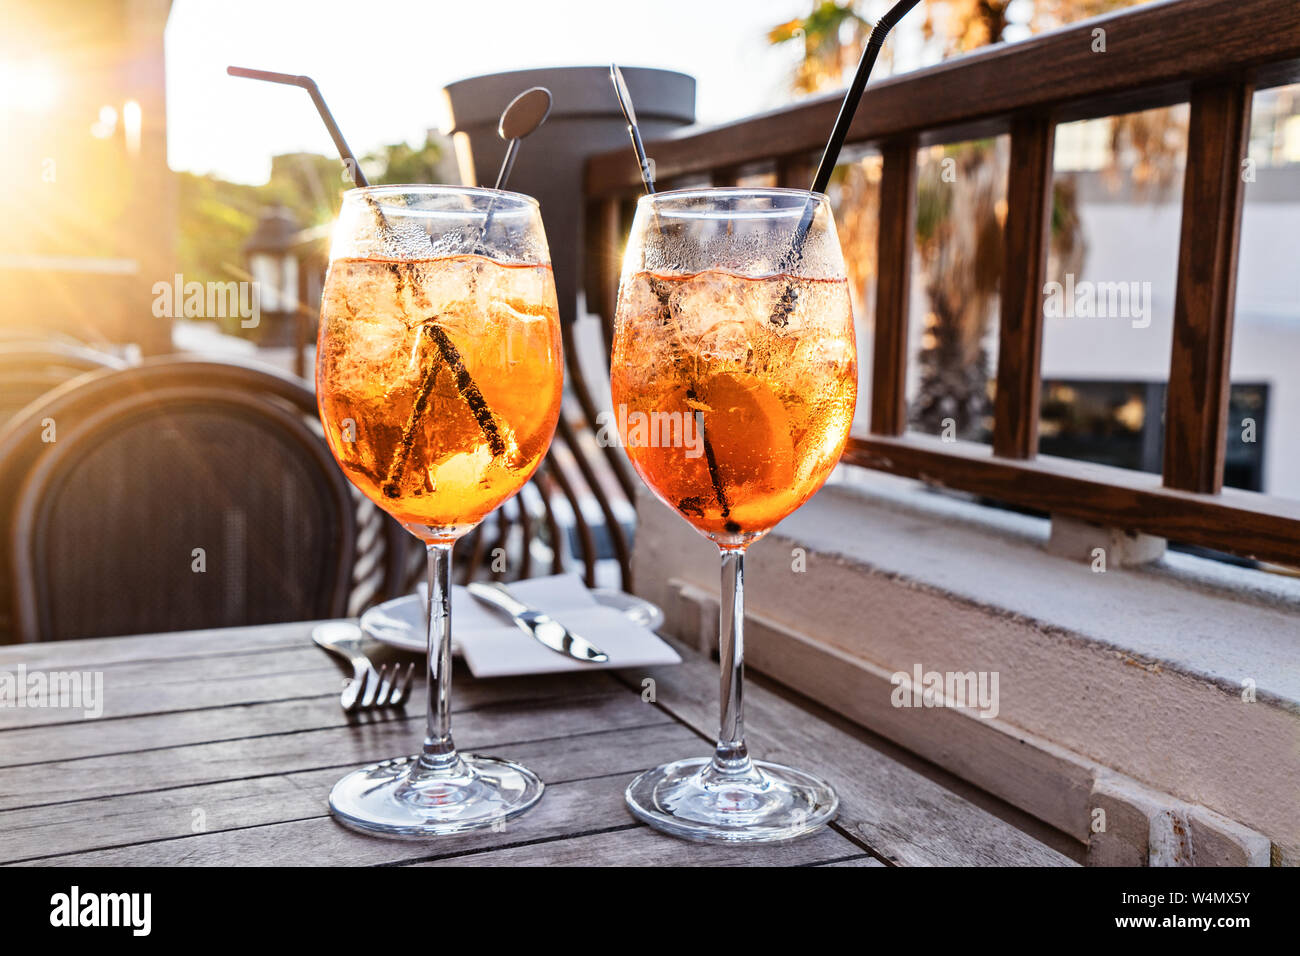 Zwei Wein Glas kalten Cocktail Aperol Spritz auf Hintergrund des  Restaurant. Traditionelle italienische Aperitif Cocktail Konzept  Stockfotografie - Alamy